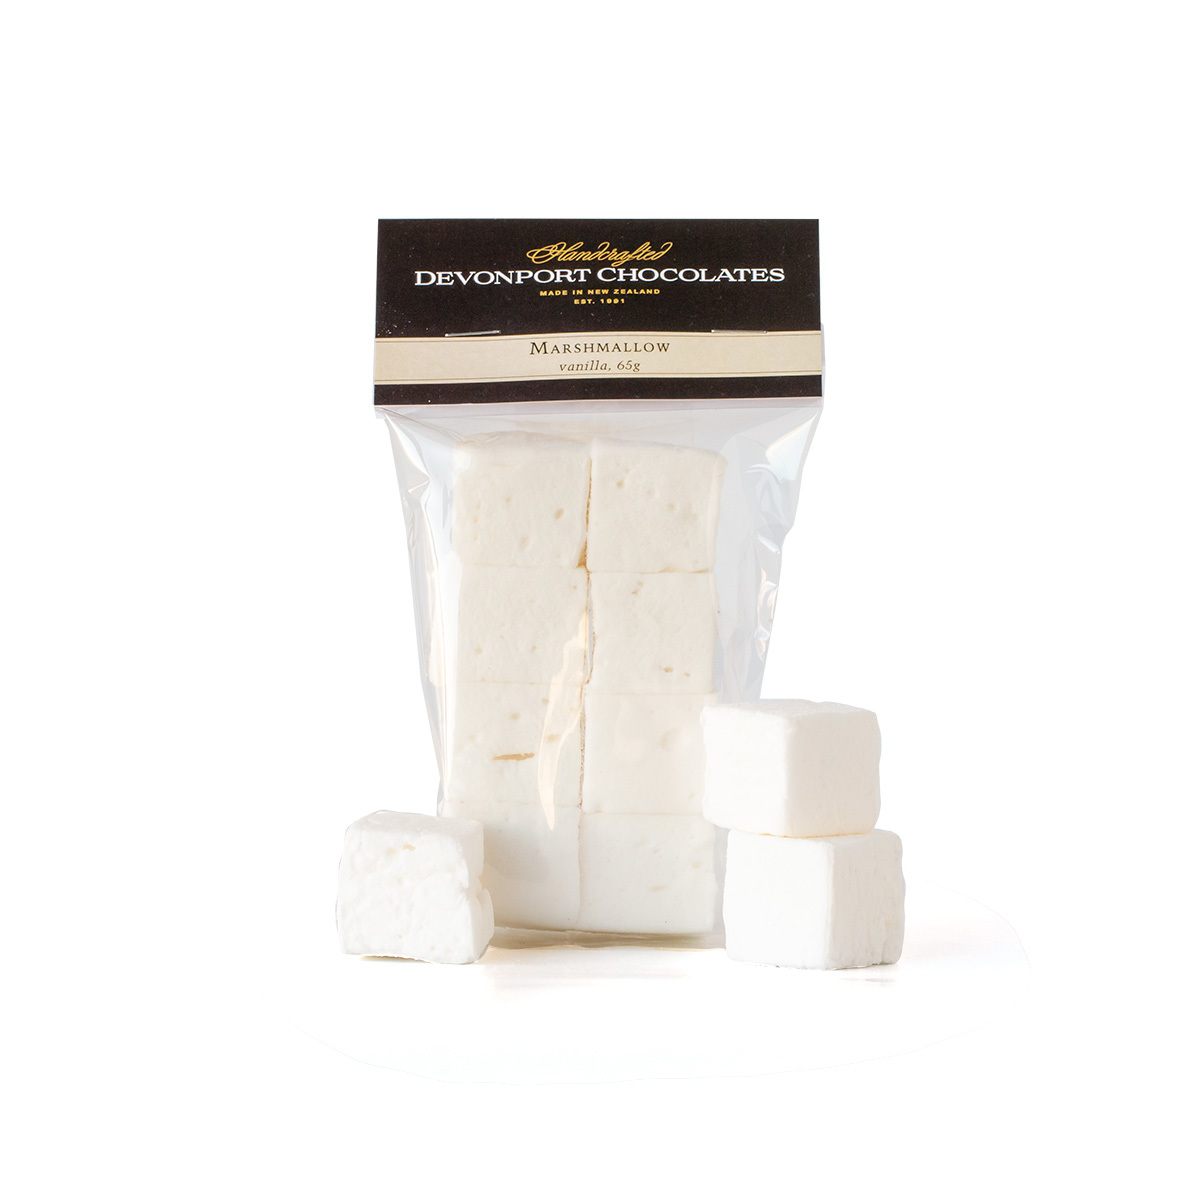 Marshmallow, Vanilla - NEW PRODUCT!